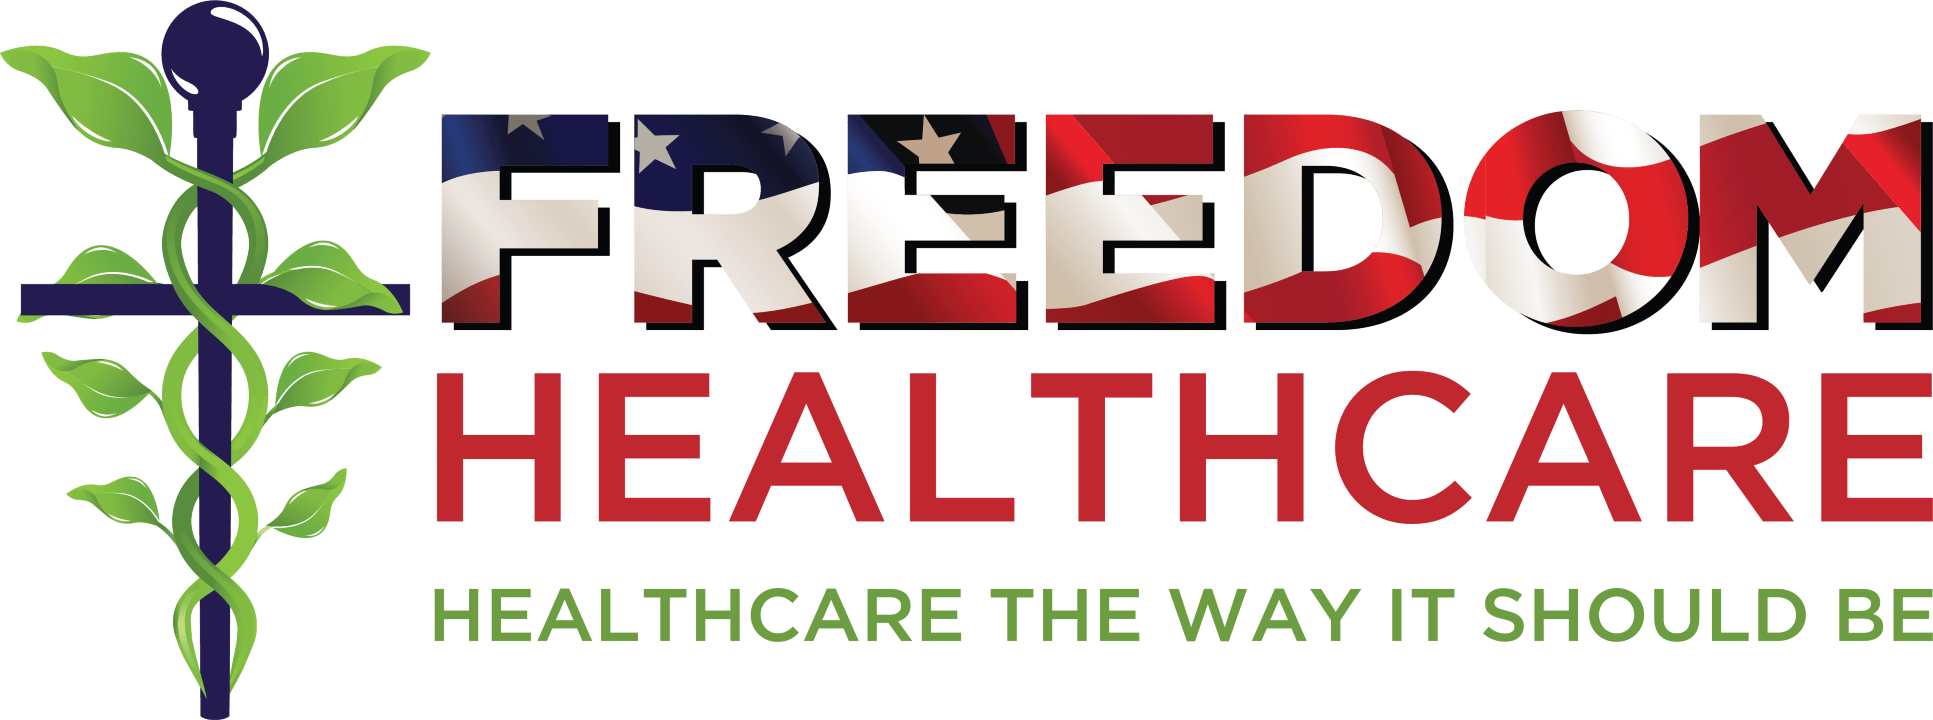 Freedom Healthcare Logo